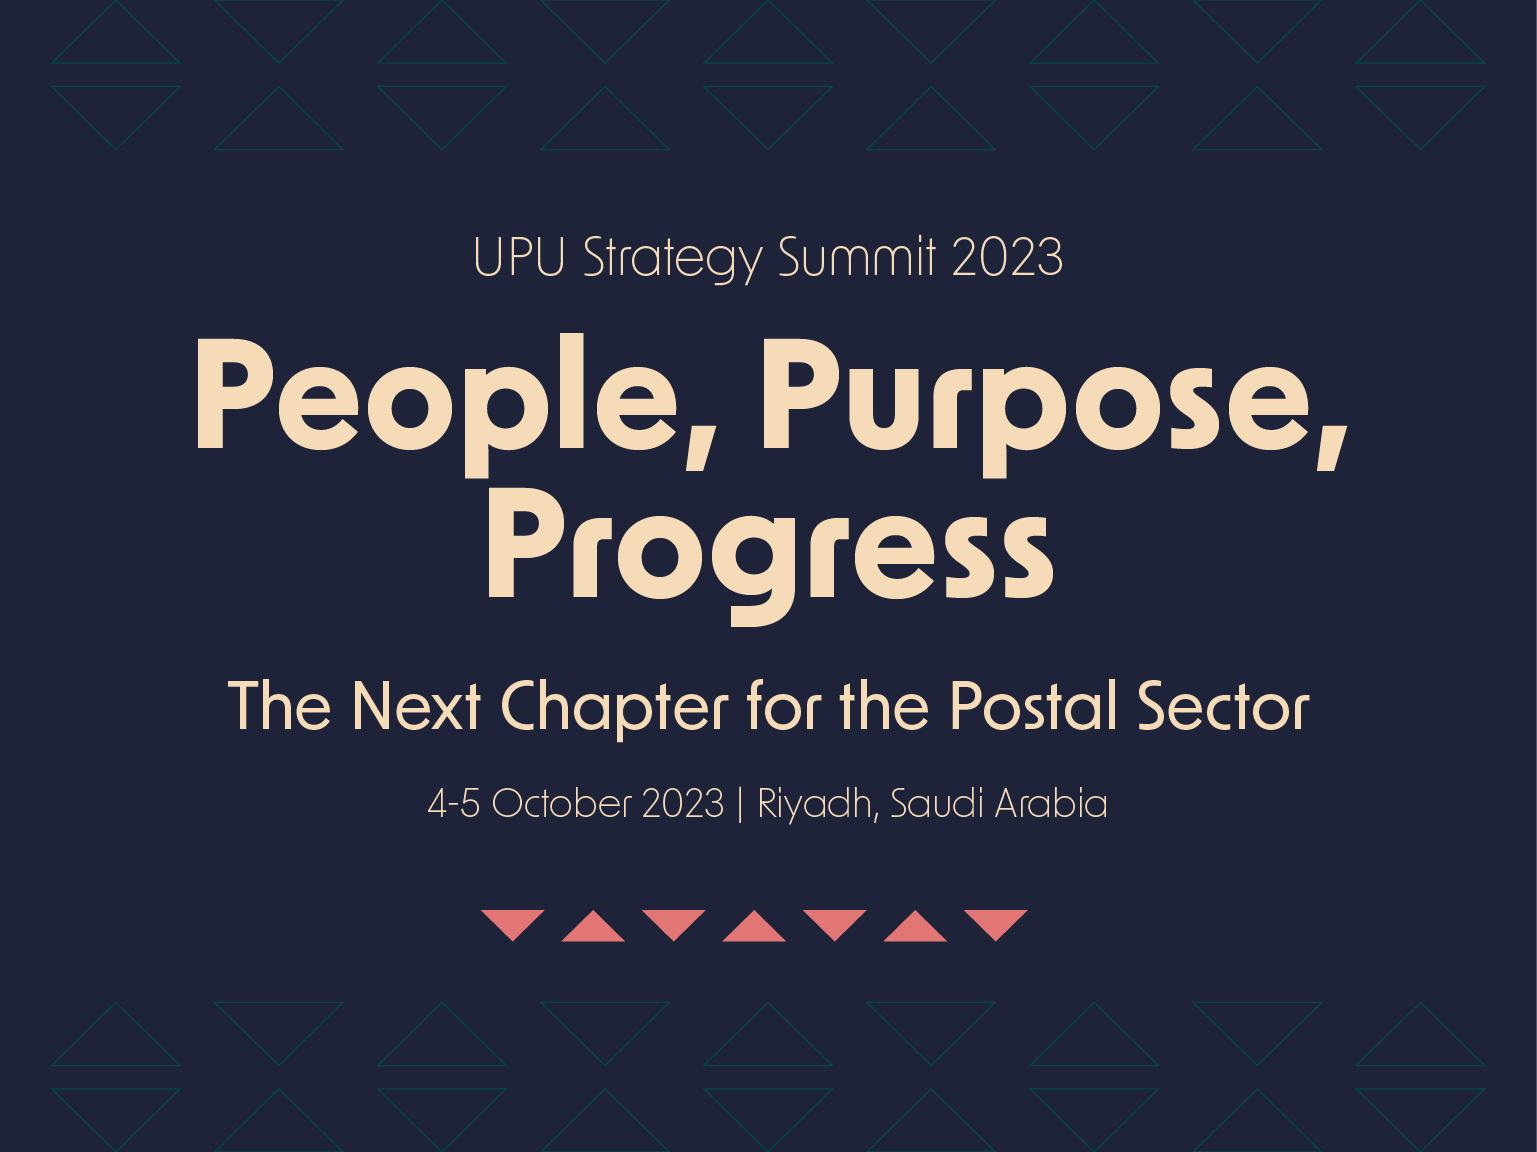 UPU Strategy Summit 2023